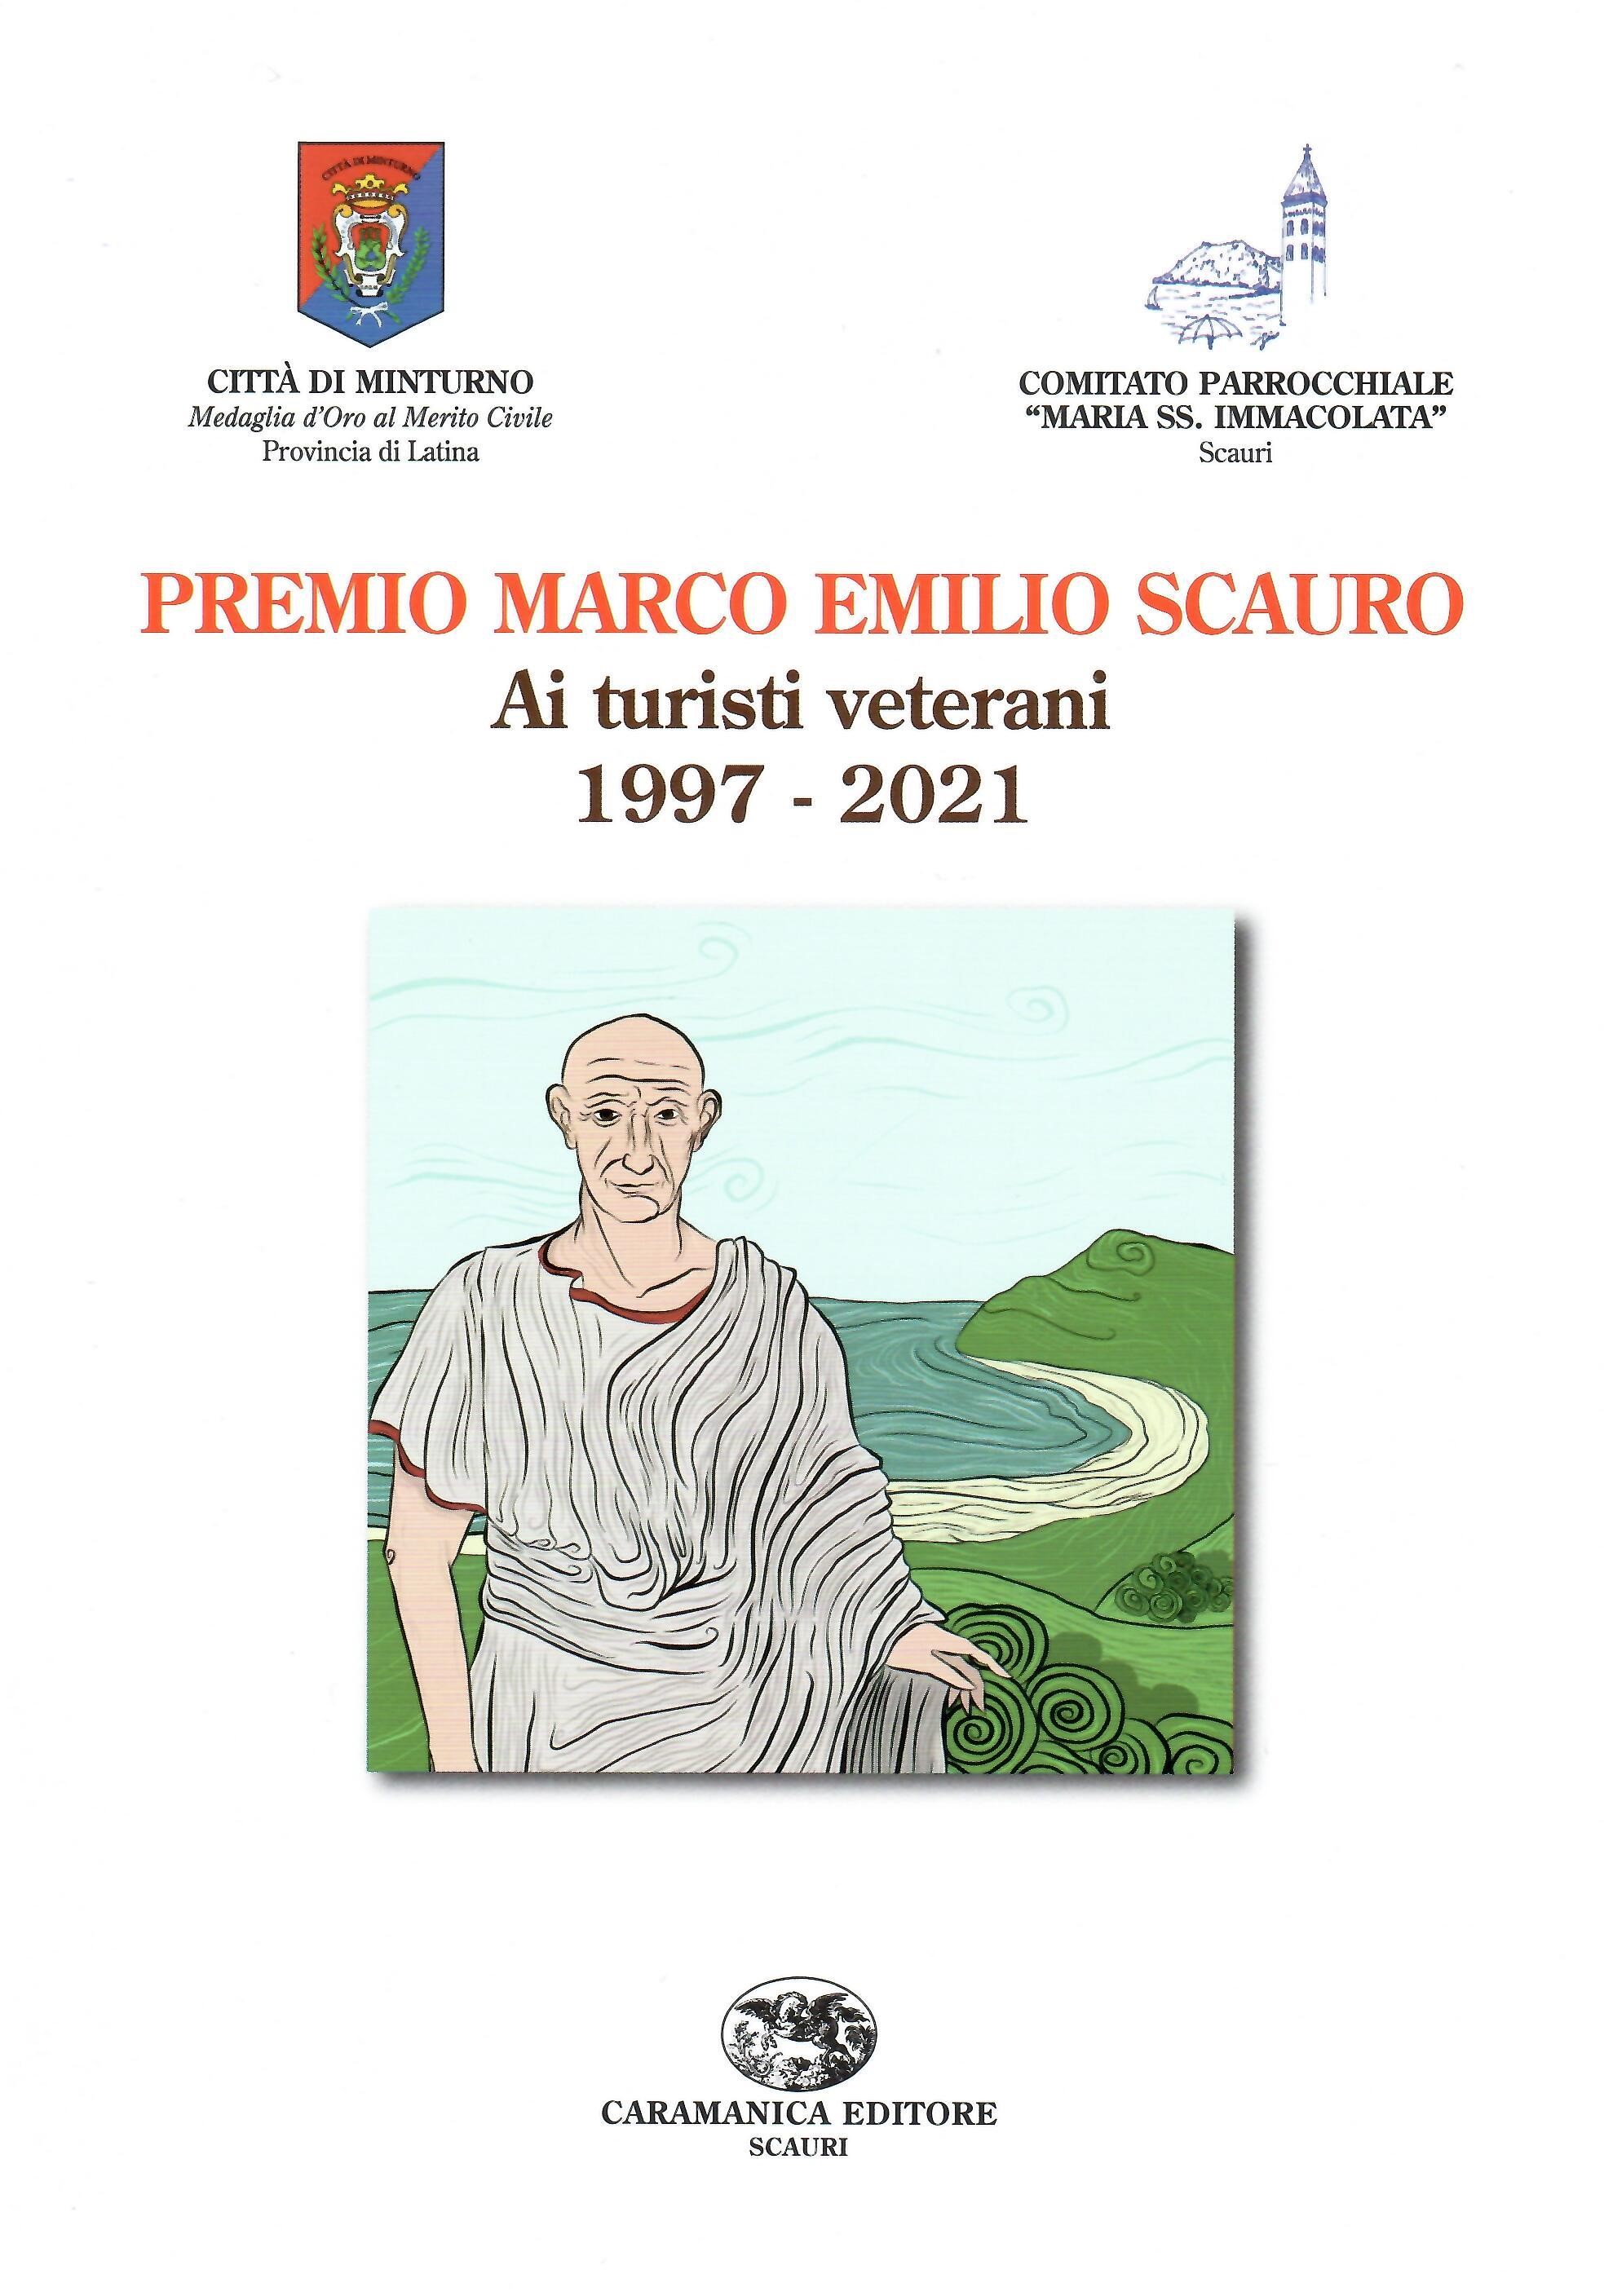 Una brochure per i 25 anni del Premio Marco Emilio Scauro - dedicato ai turisti veterani